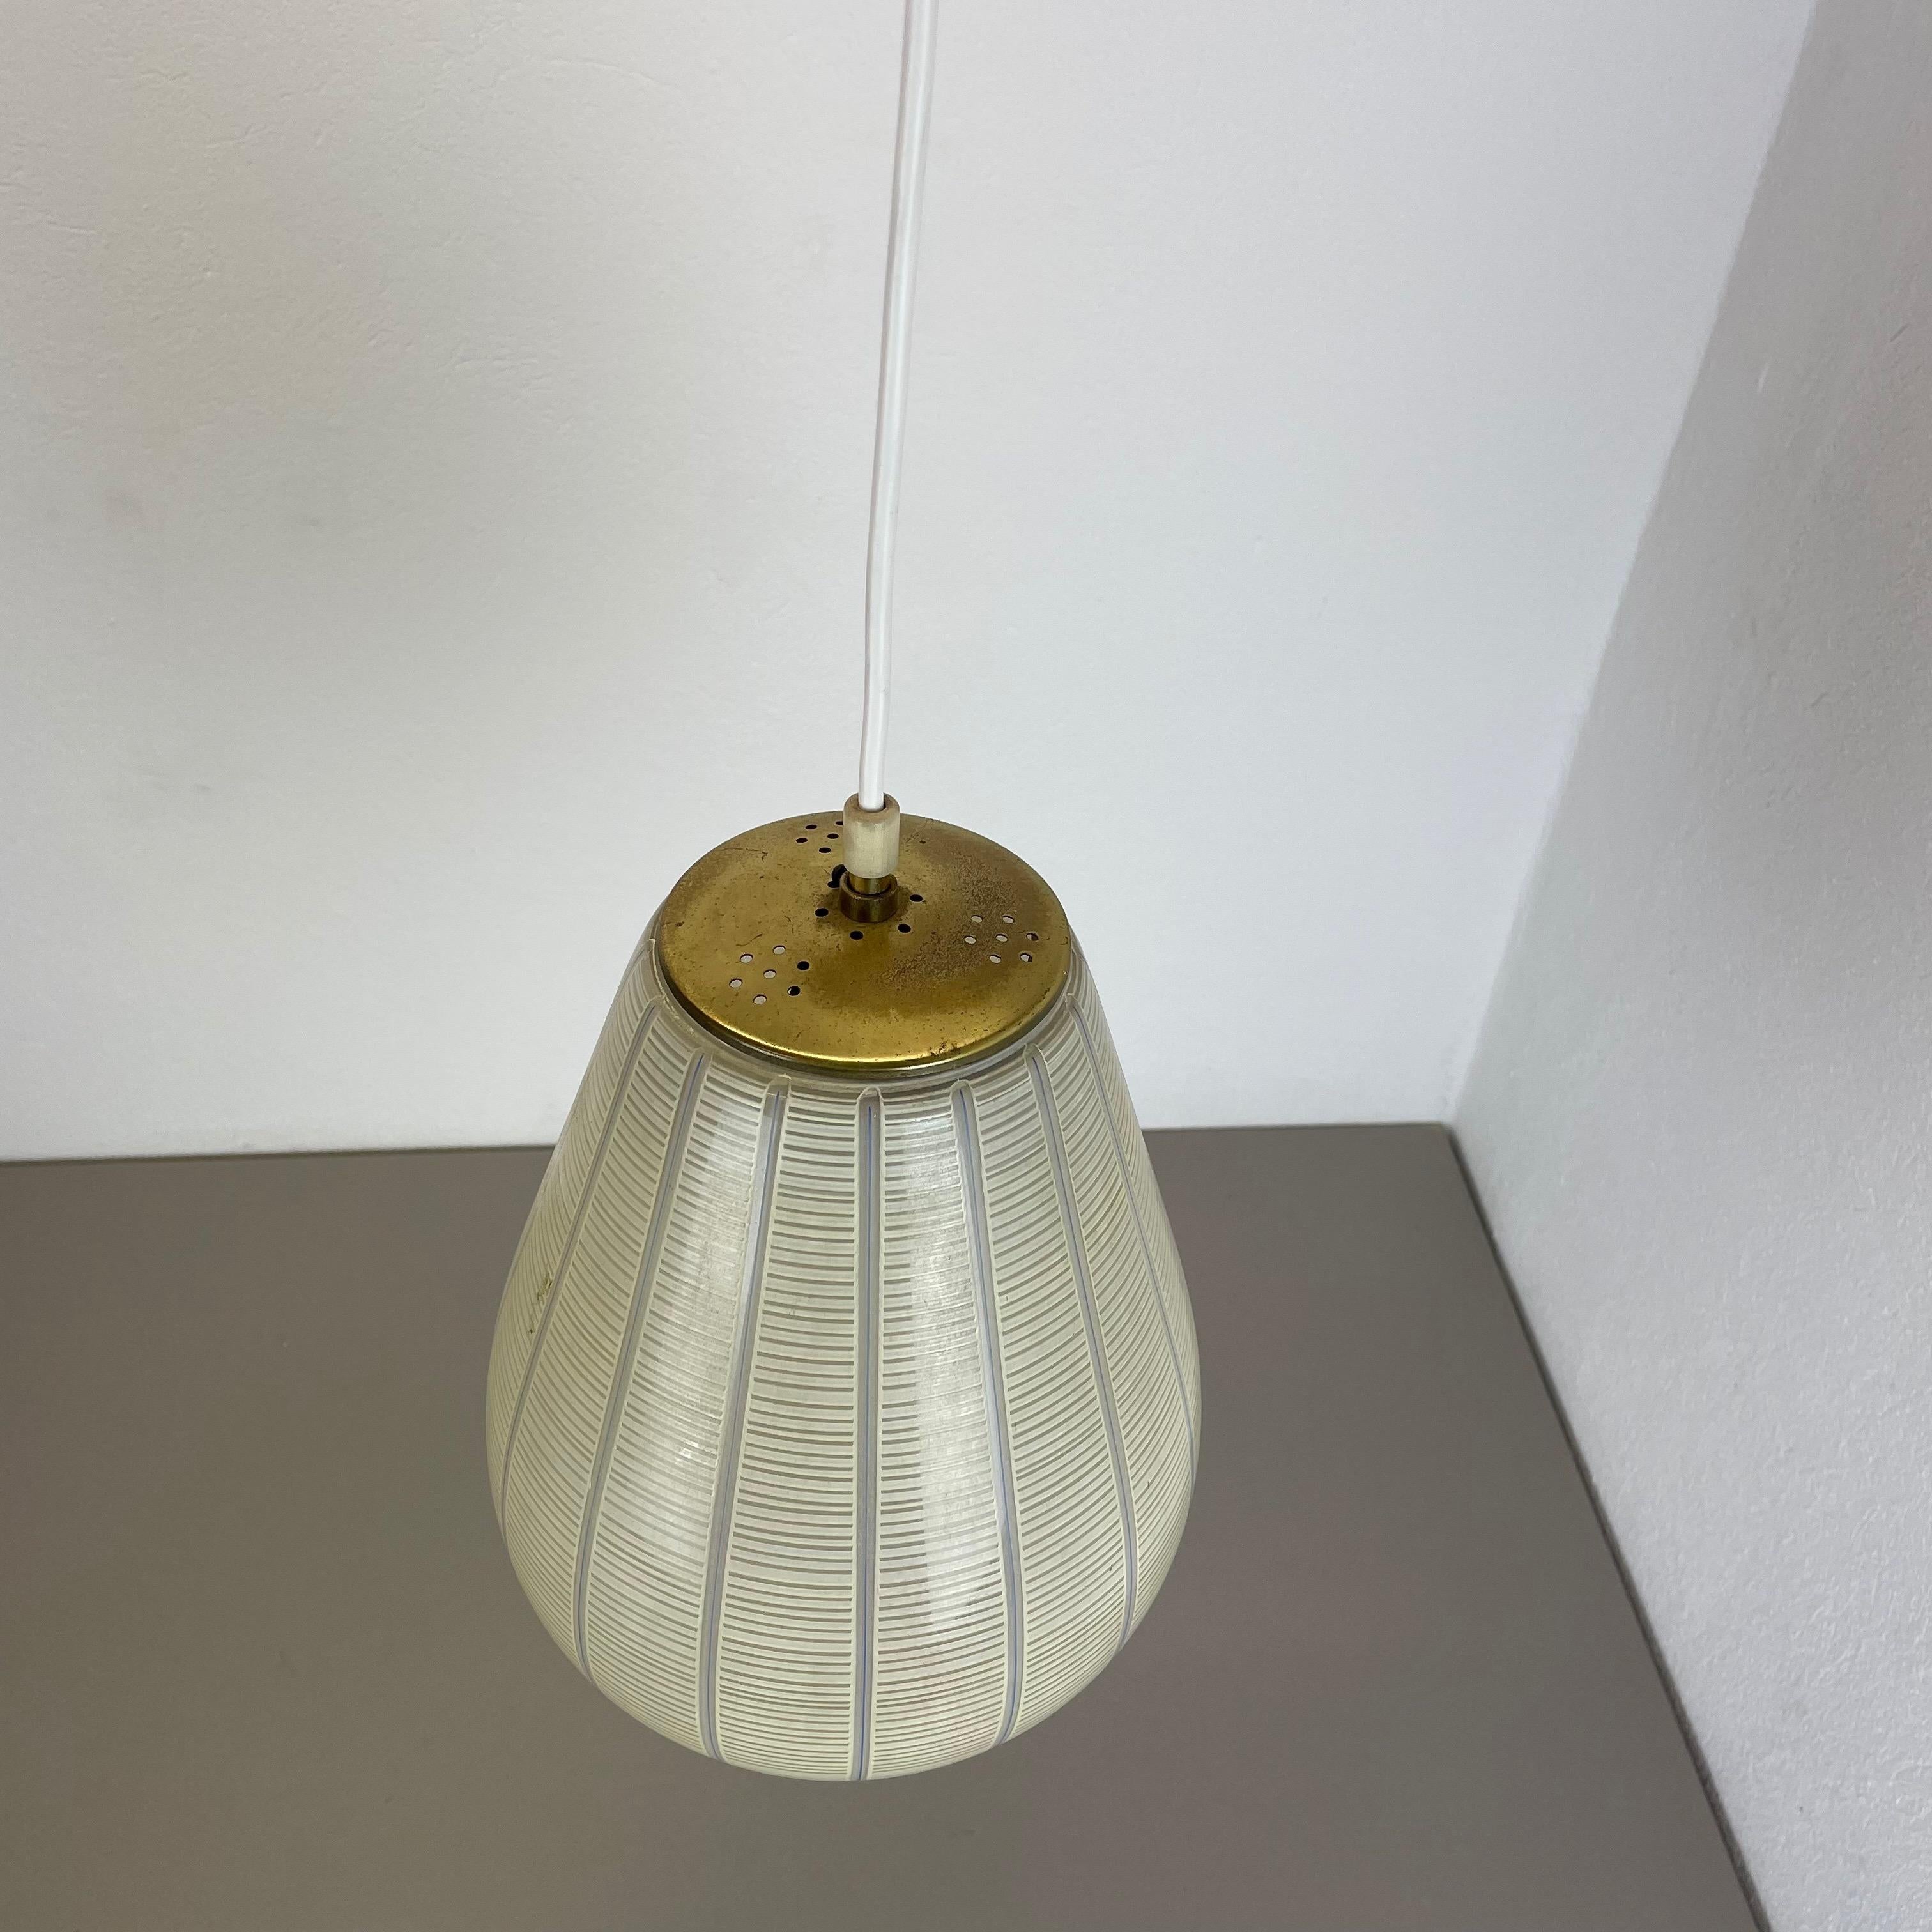 Italian Midcentury Modernist Glass Stilnovo Style Hanging Light, Italy, 1950 For Sale